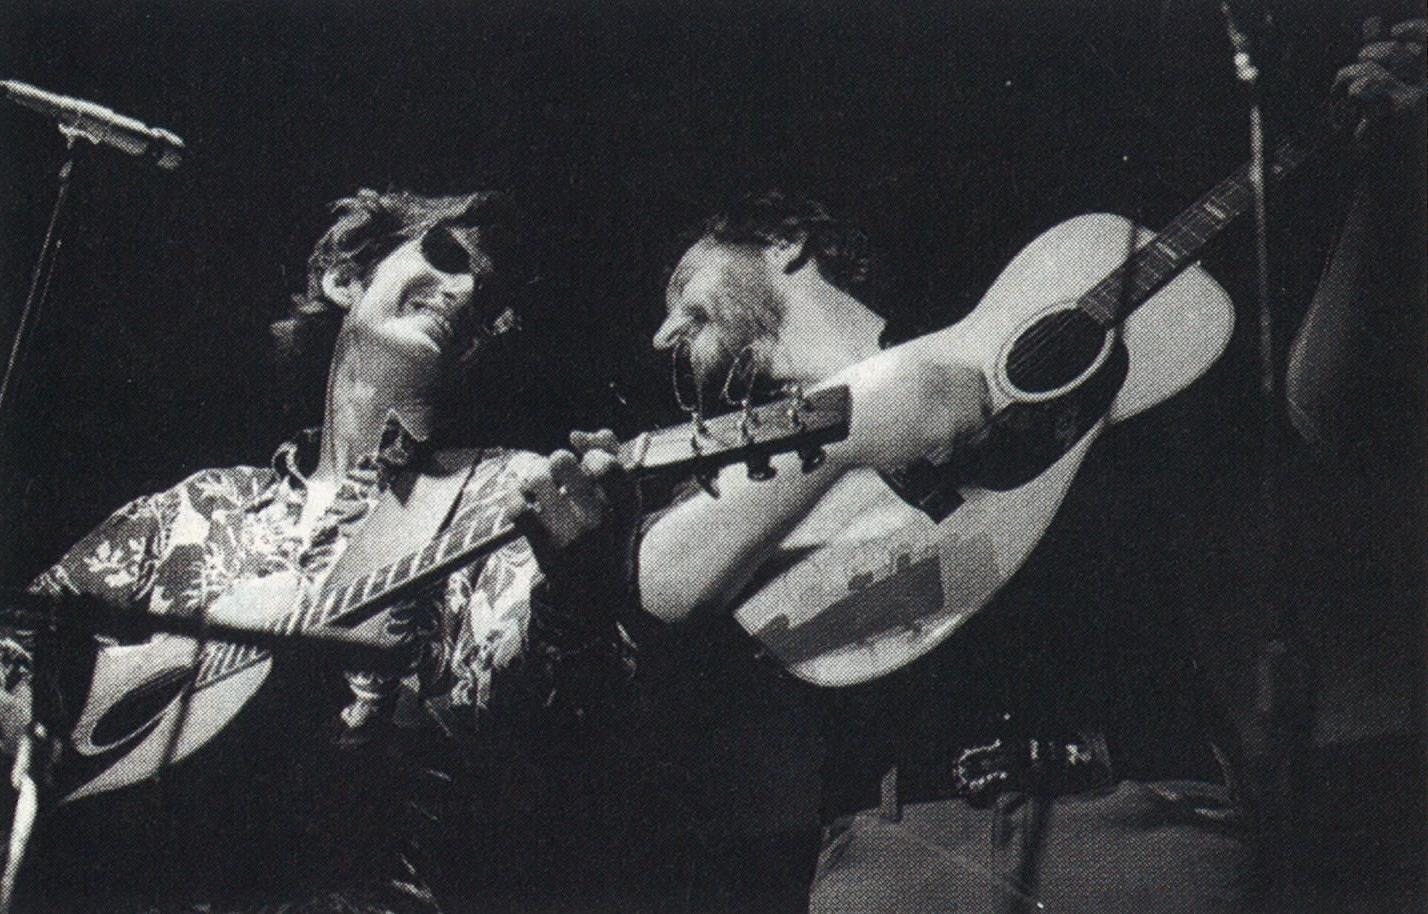 Townes Van Zandt jamming with fellow troubadour Jerry Jeff Walker in 1974.